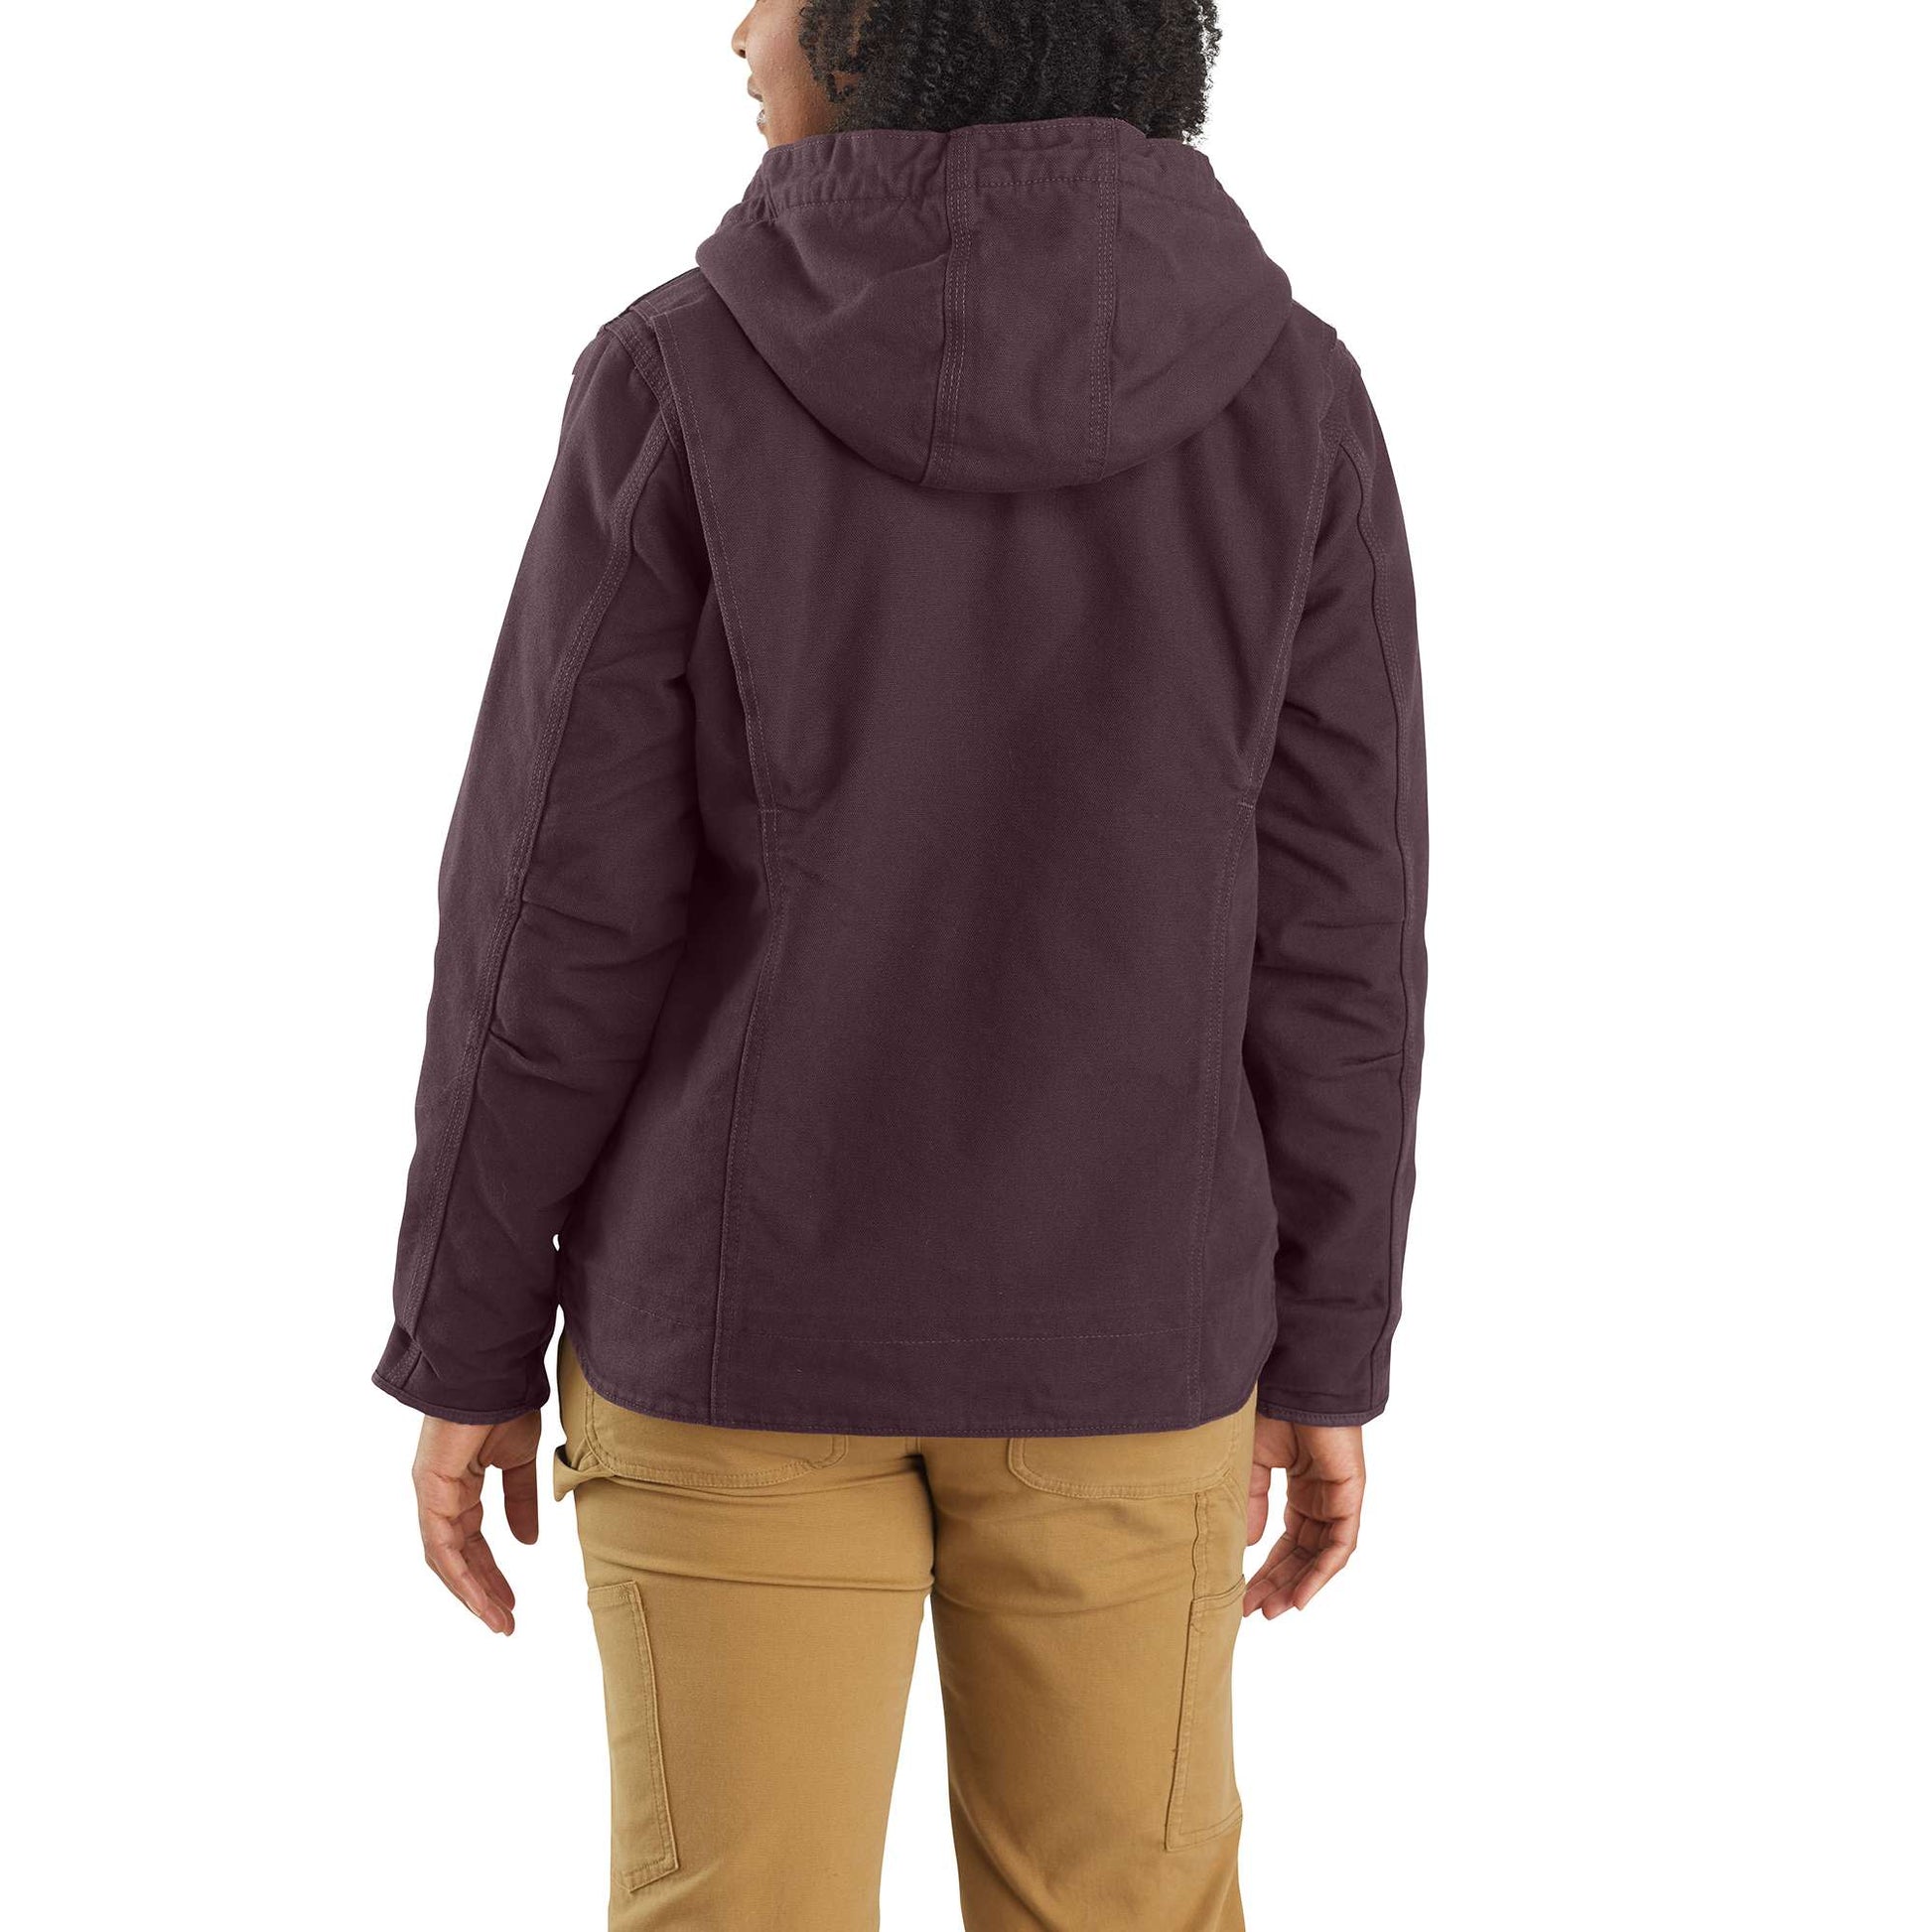 Carhartt Jacket: Women's 104292 BLK Black Duck Sherpa Lined Washed Jacket